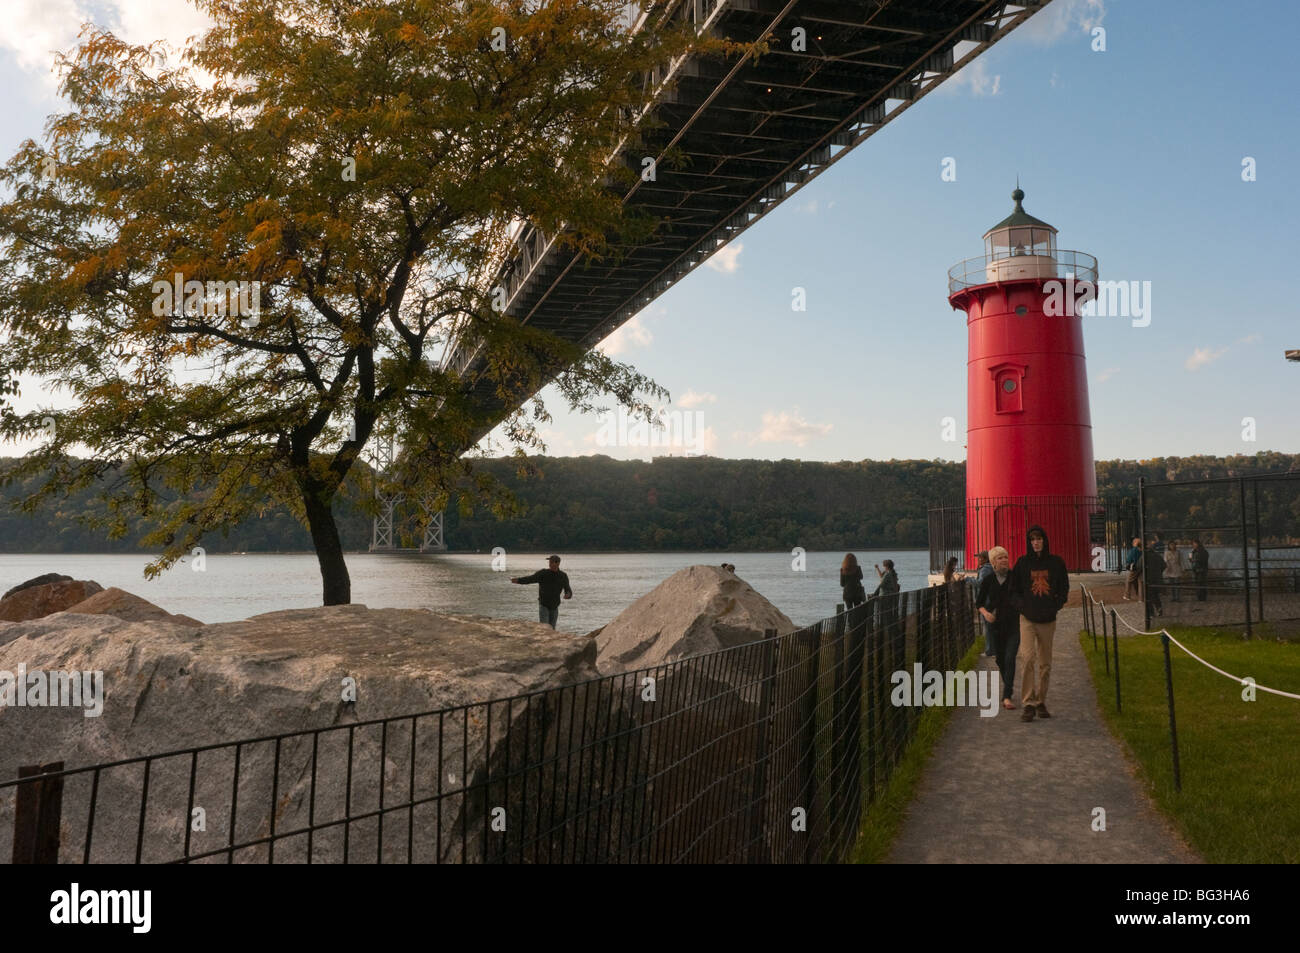 New York, NY - 11 octobre 2009 Le petit phare rouge dans la région de Fort Washington Park ©Stacy Walsh Rosenstock/Alamy Banque D'Images